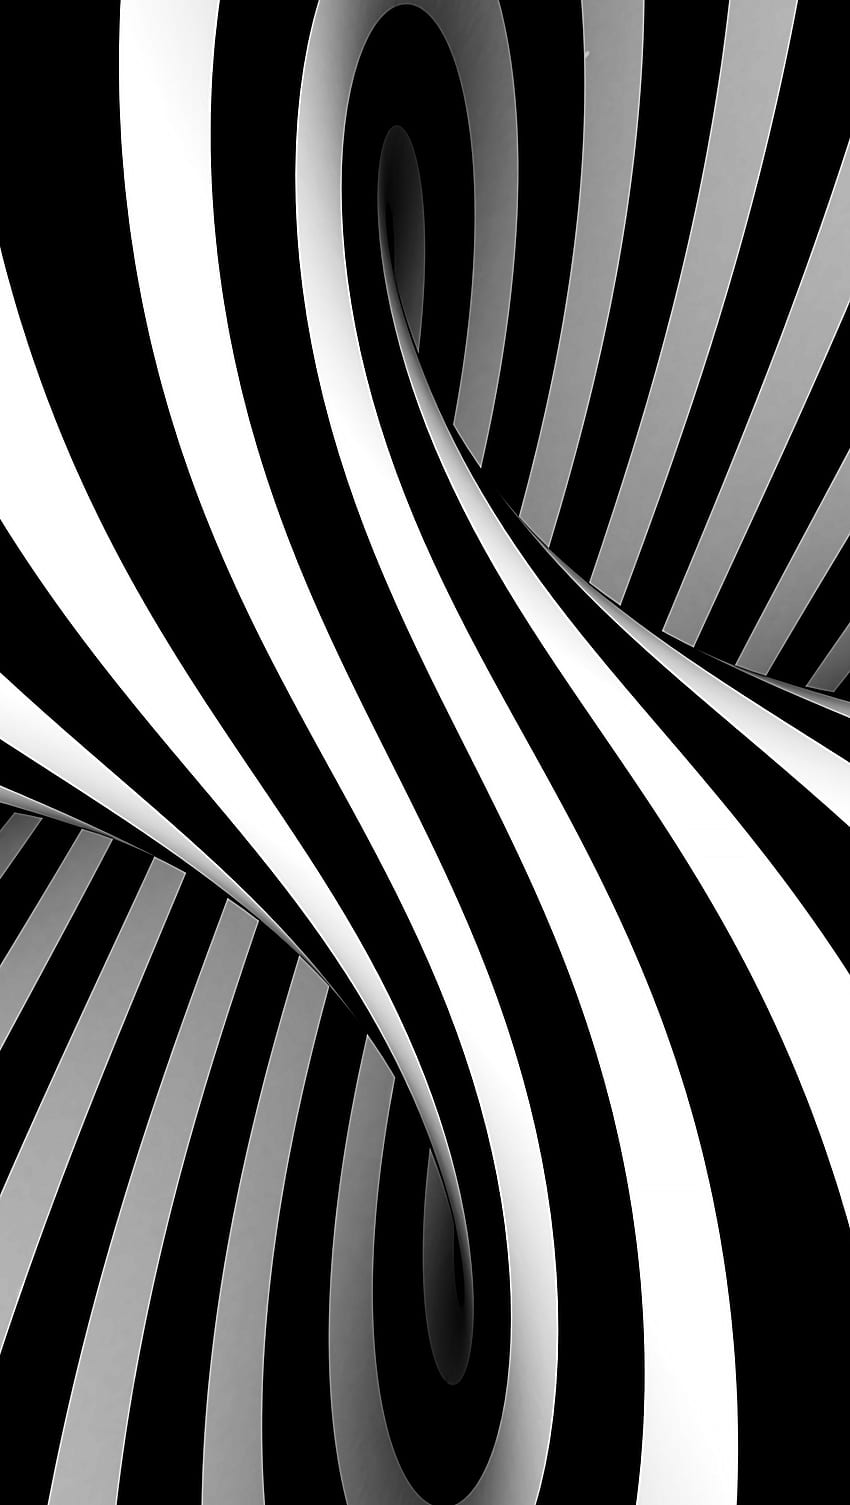 Trải nghiệm một hình nền điện thoại đẹp mắt với hình ảnh Vasarely đen trắng 3D cực kỳ sắc nét. Với tính năng mê hoặc quang học, bạn sẽ bị cuốn hút bởi sự tạo hình đầy tuyệt vời.